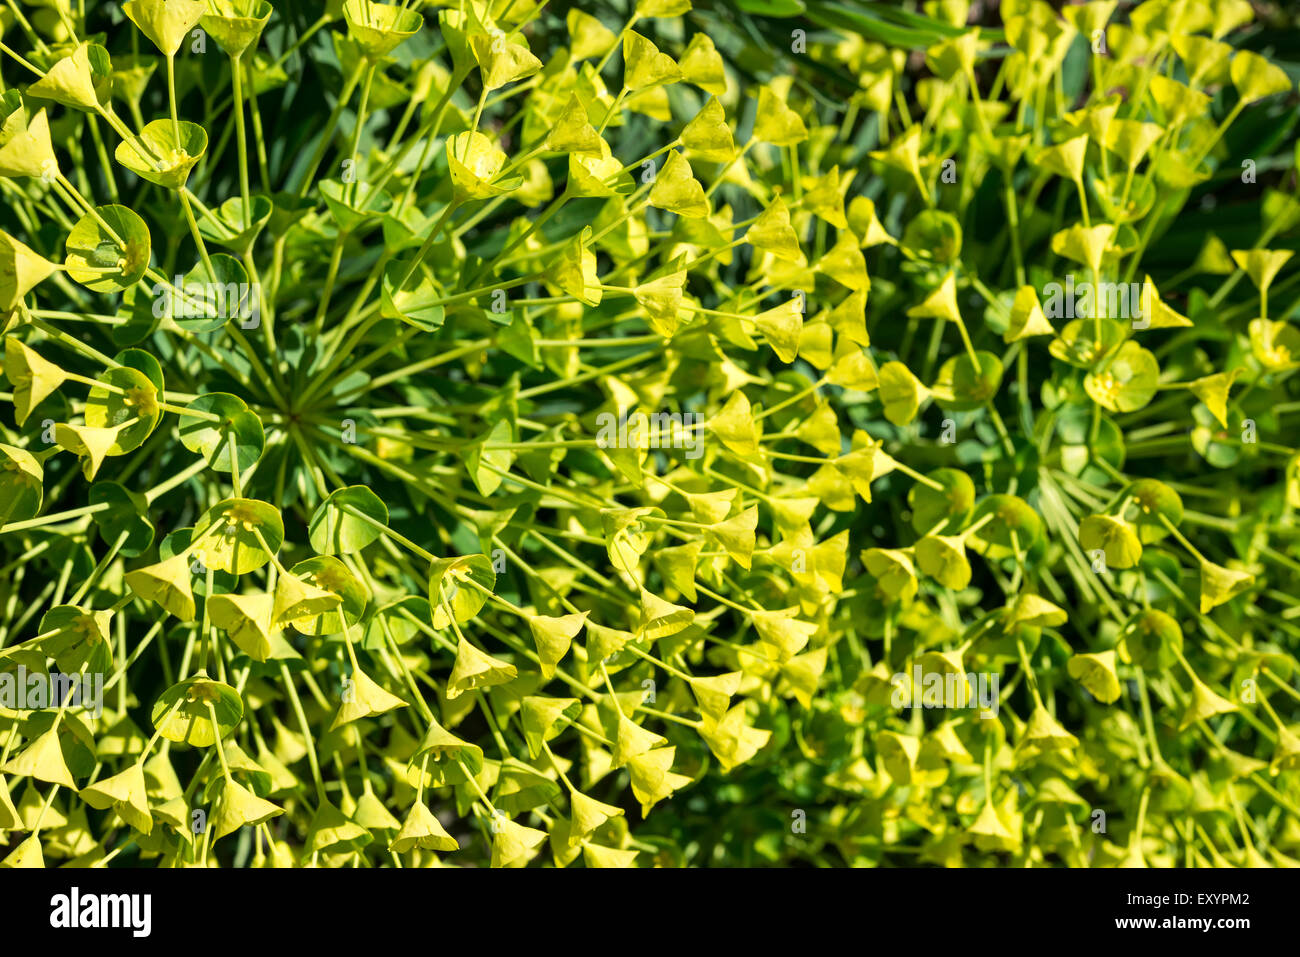 Chiudere su di un fiore testa appartenente ad una Euphorbia Wulfenii con masse di giallo e verde fiori e brattee. Foto Stock